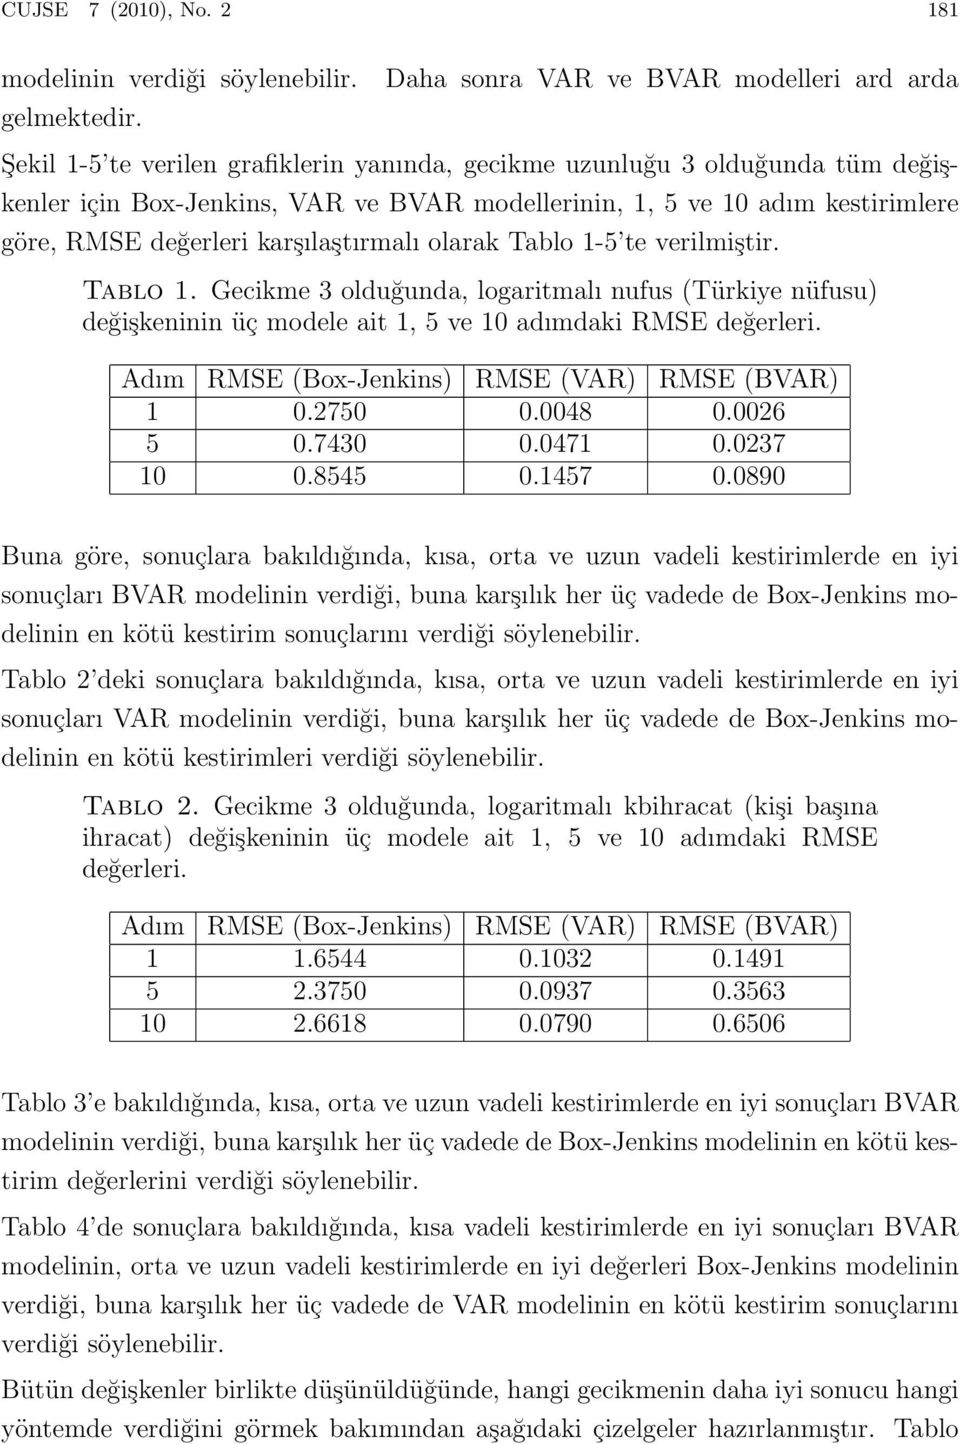 kestirimlere göre, RMSE değerleri karşılaştırmalı olarak Tablo 1-5 te verilmiştir. Tablo 1. Gecikme 3 olduğunda, logaritmalı nufus (Türkiye nüfusu) değişkeninin üç modele ait 1, 5 ve 10 adımdaki RMSE değerleri.